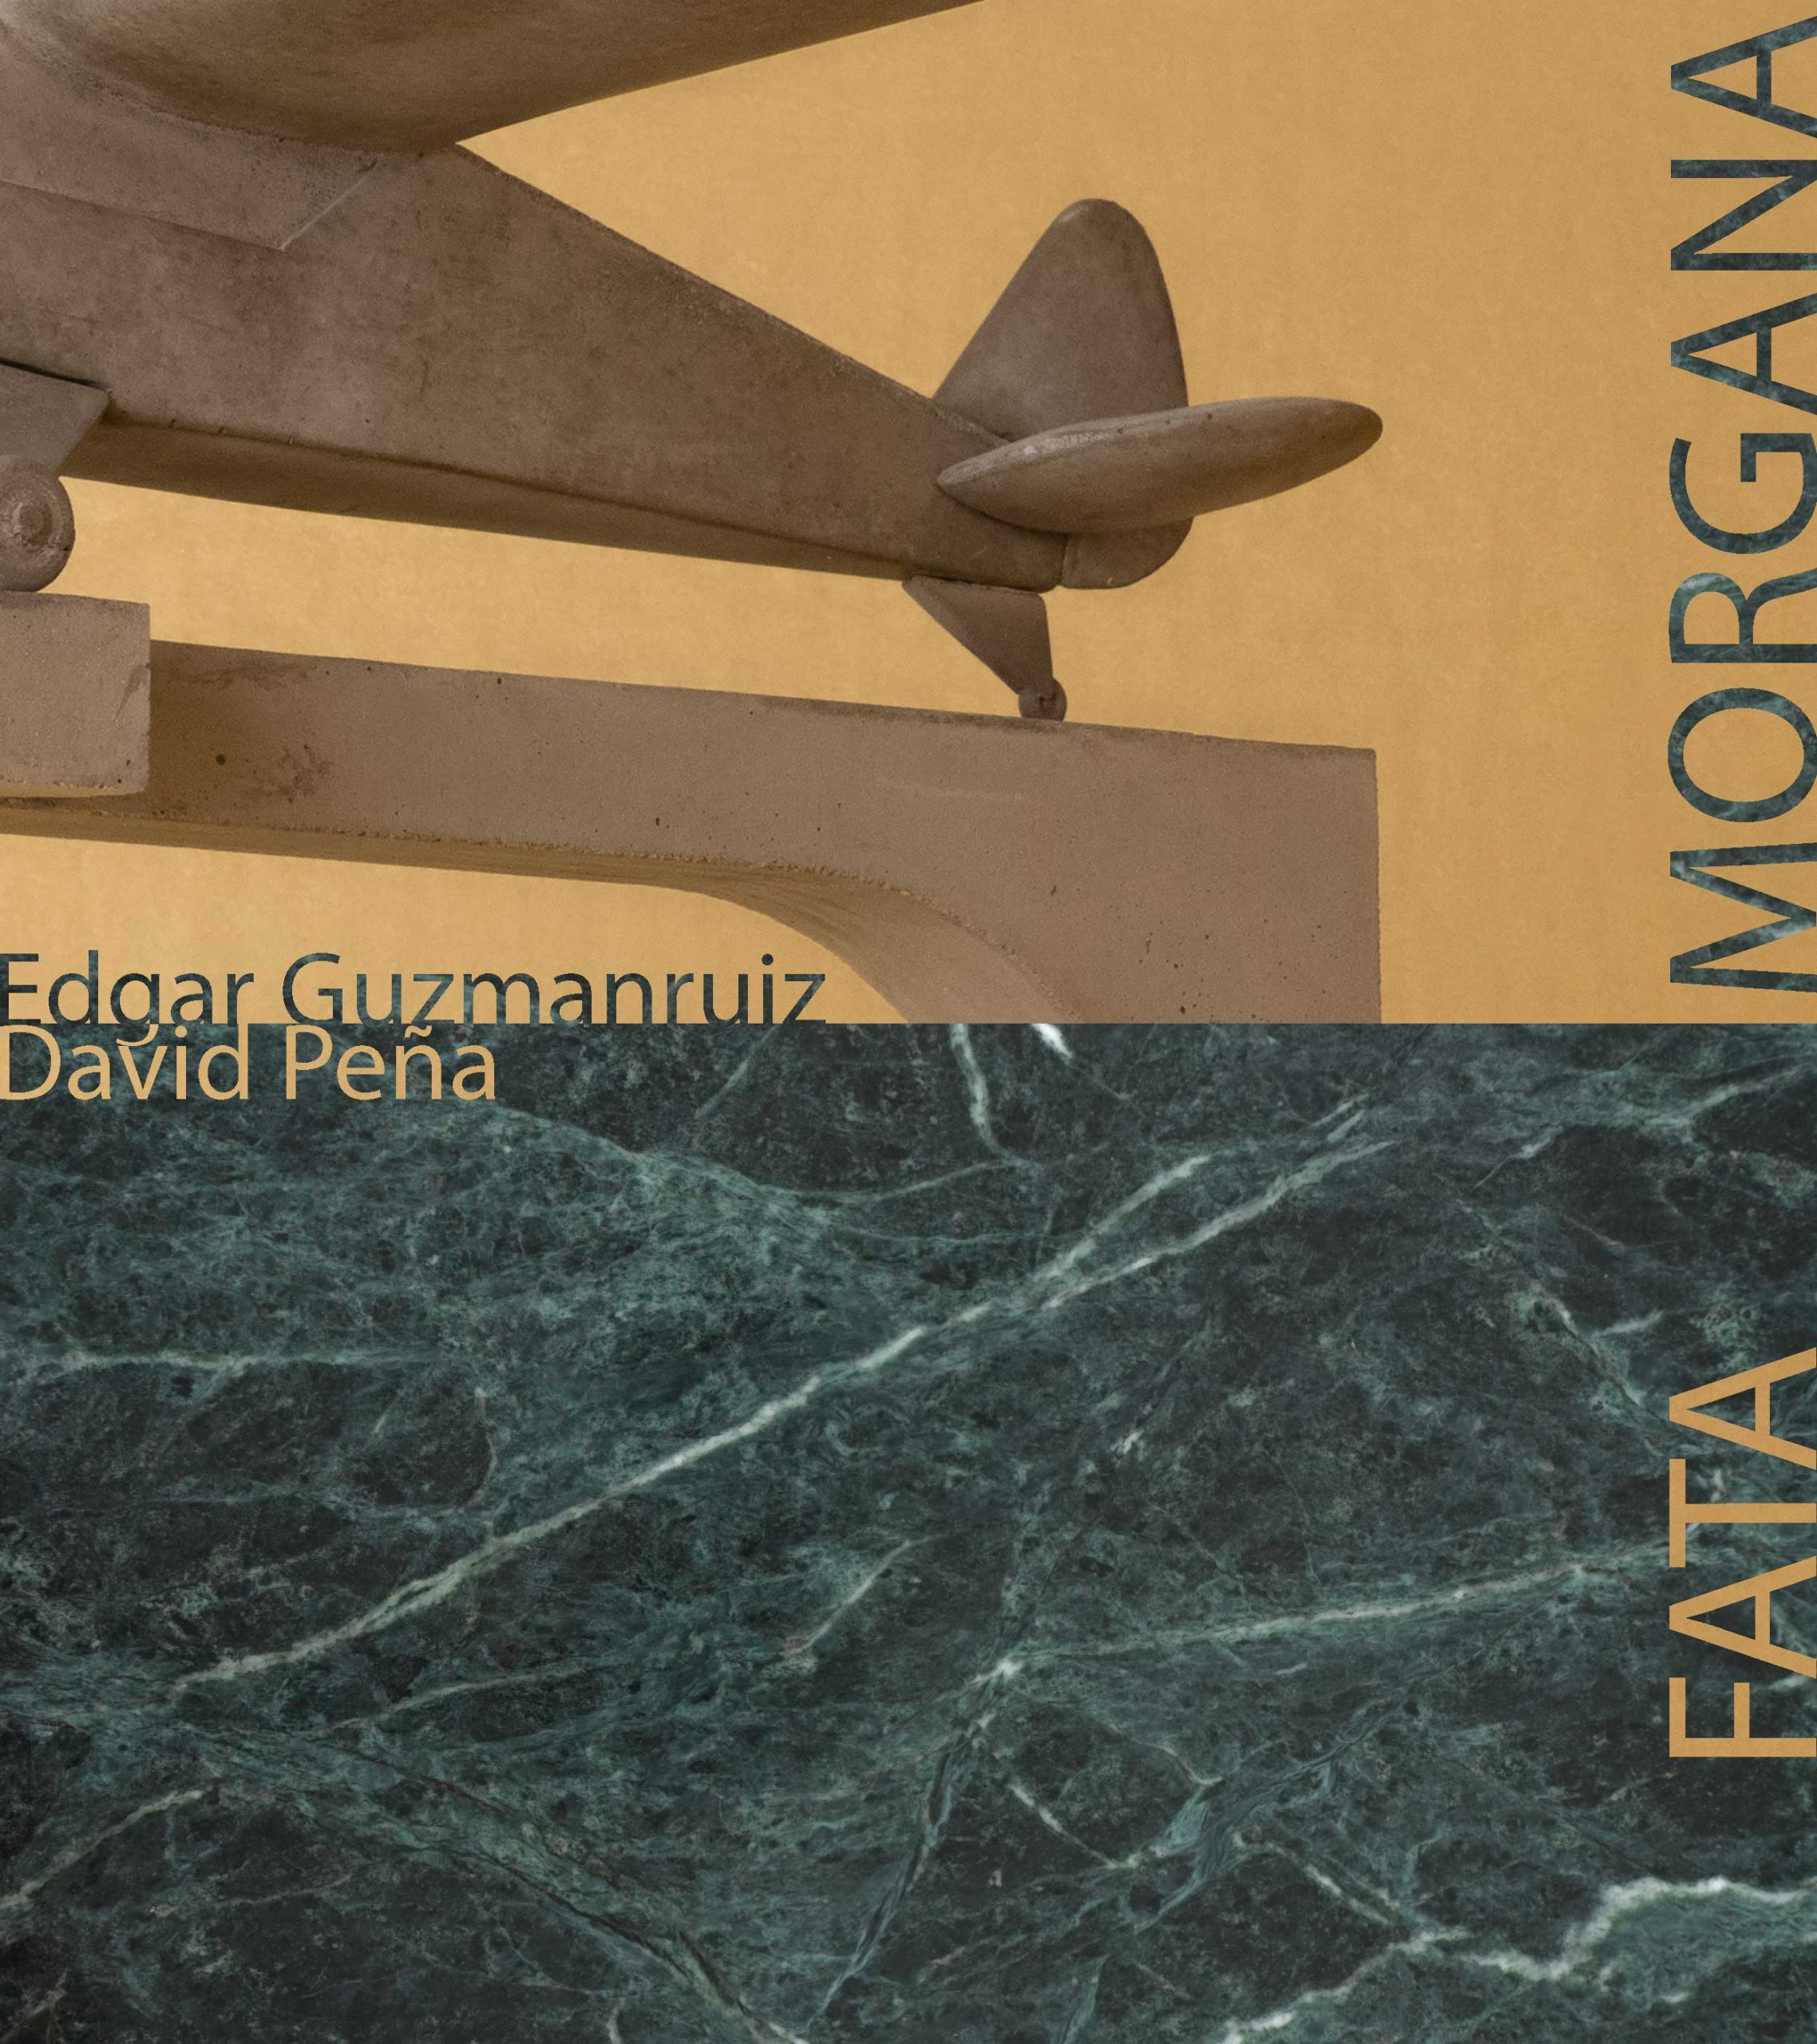 Fata Morgana – exposición de David Peña y Edgar Guzmanruiz en LA galería